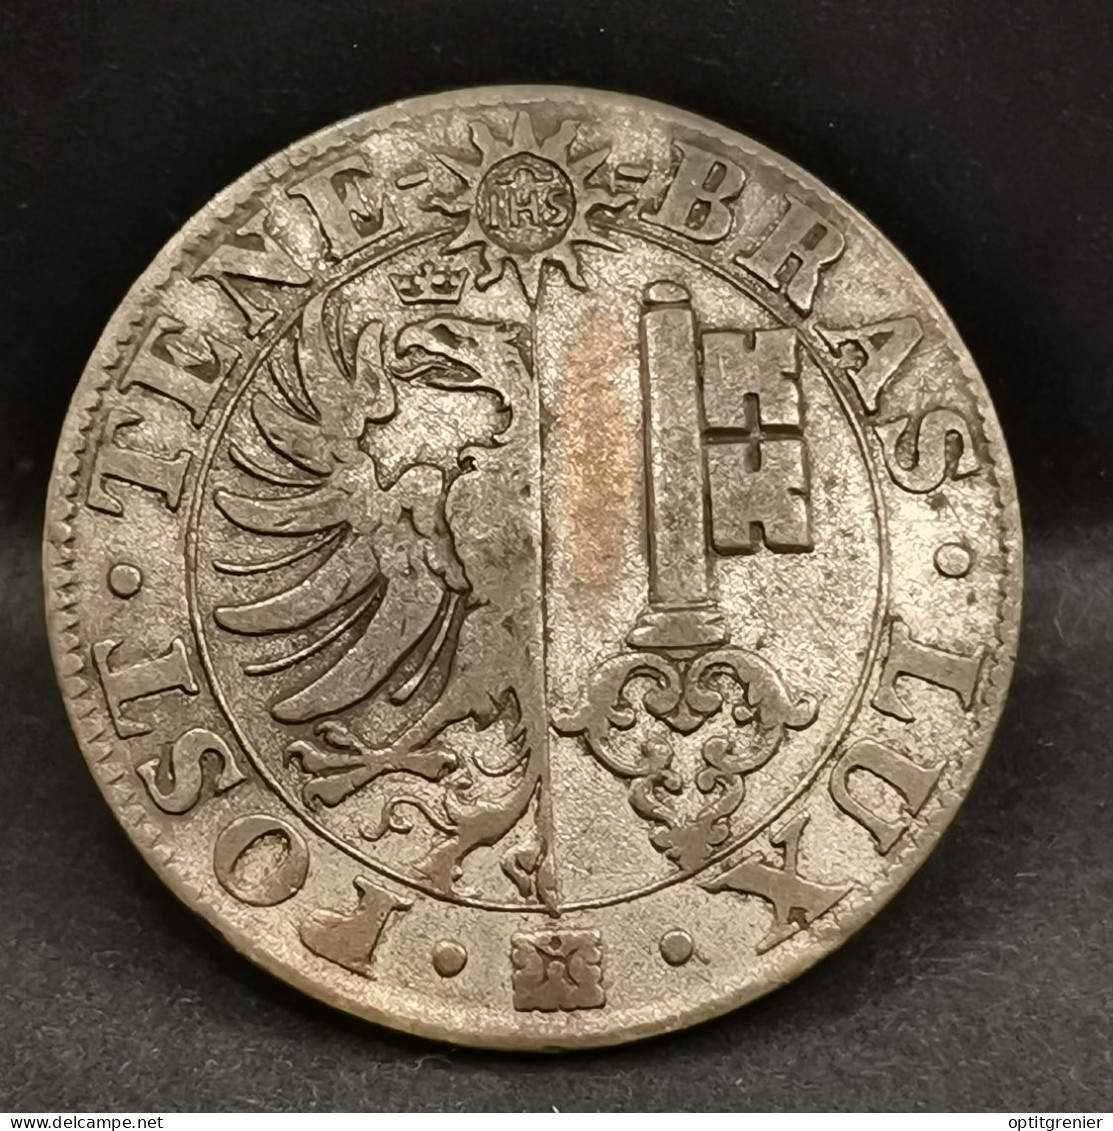 25 CENTIMES 1839 BILLON ARGENT CANTON DE GENEVE SUISSE / SWITZERLAND - Monetazione Cantonale